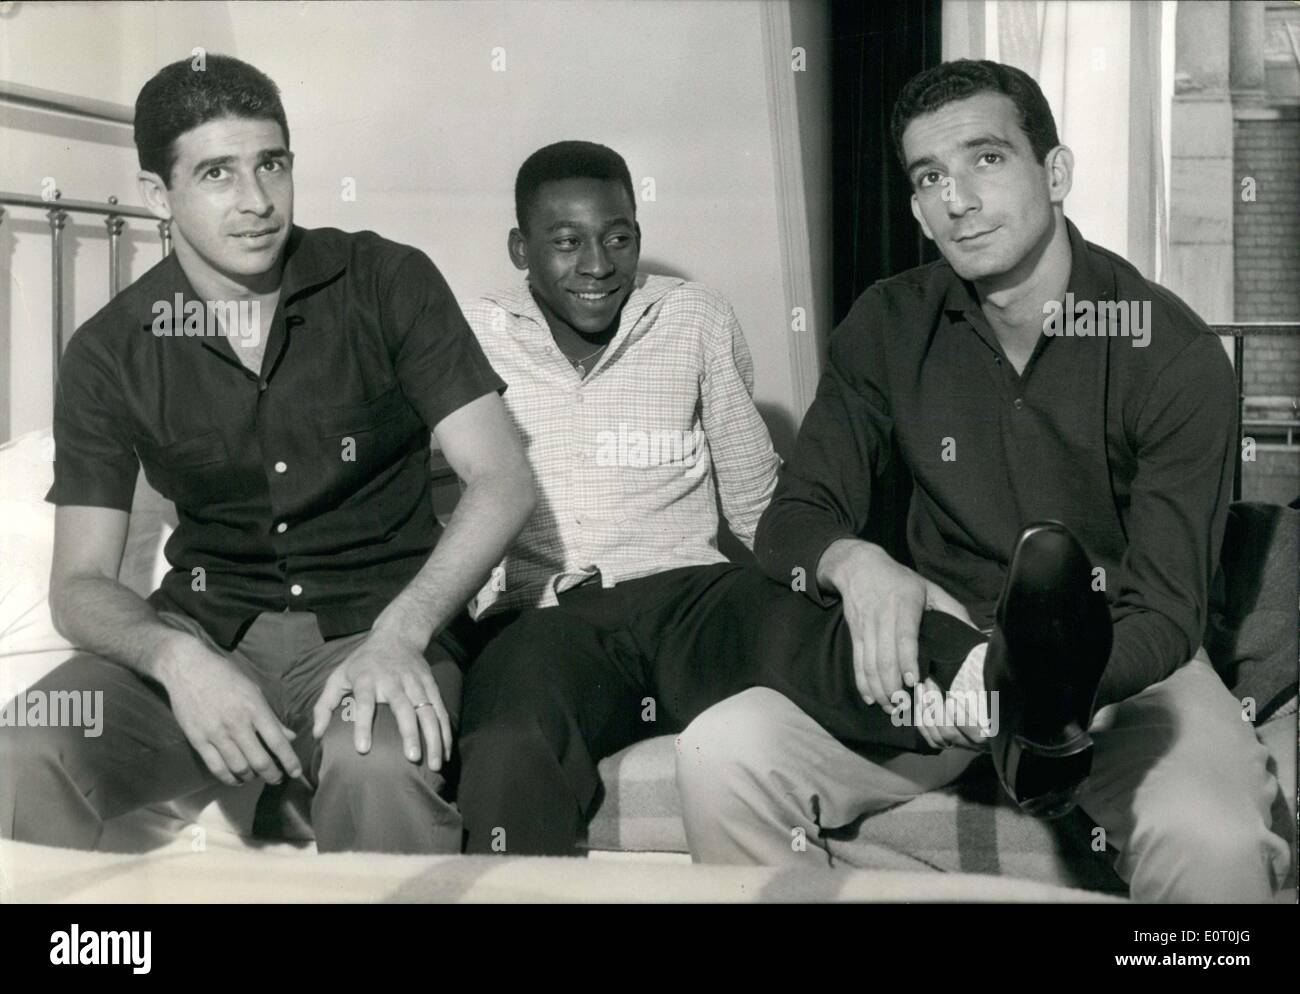 Juin 06, 1960 - Les meilleurs joueurs de football au monde : Ney, Pel ?, et Mauro Banque D'Images